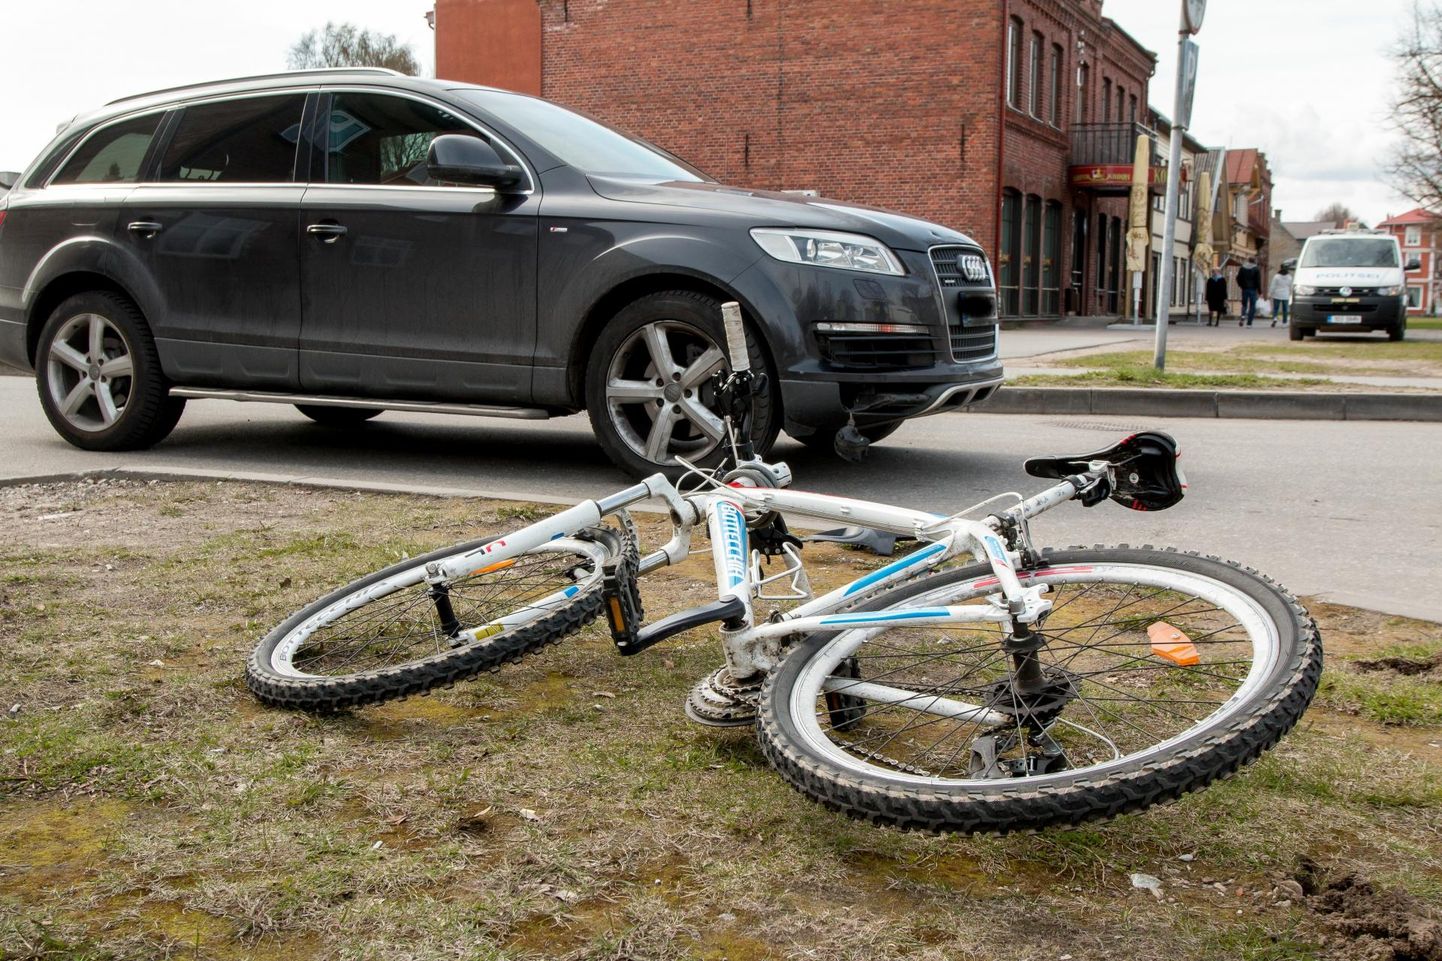 Õnnetus jalgrattaga viis ratturi haiglasse. Foto on illustreeriv.